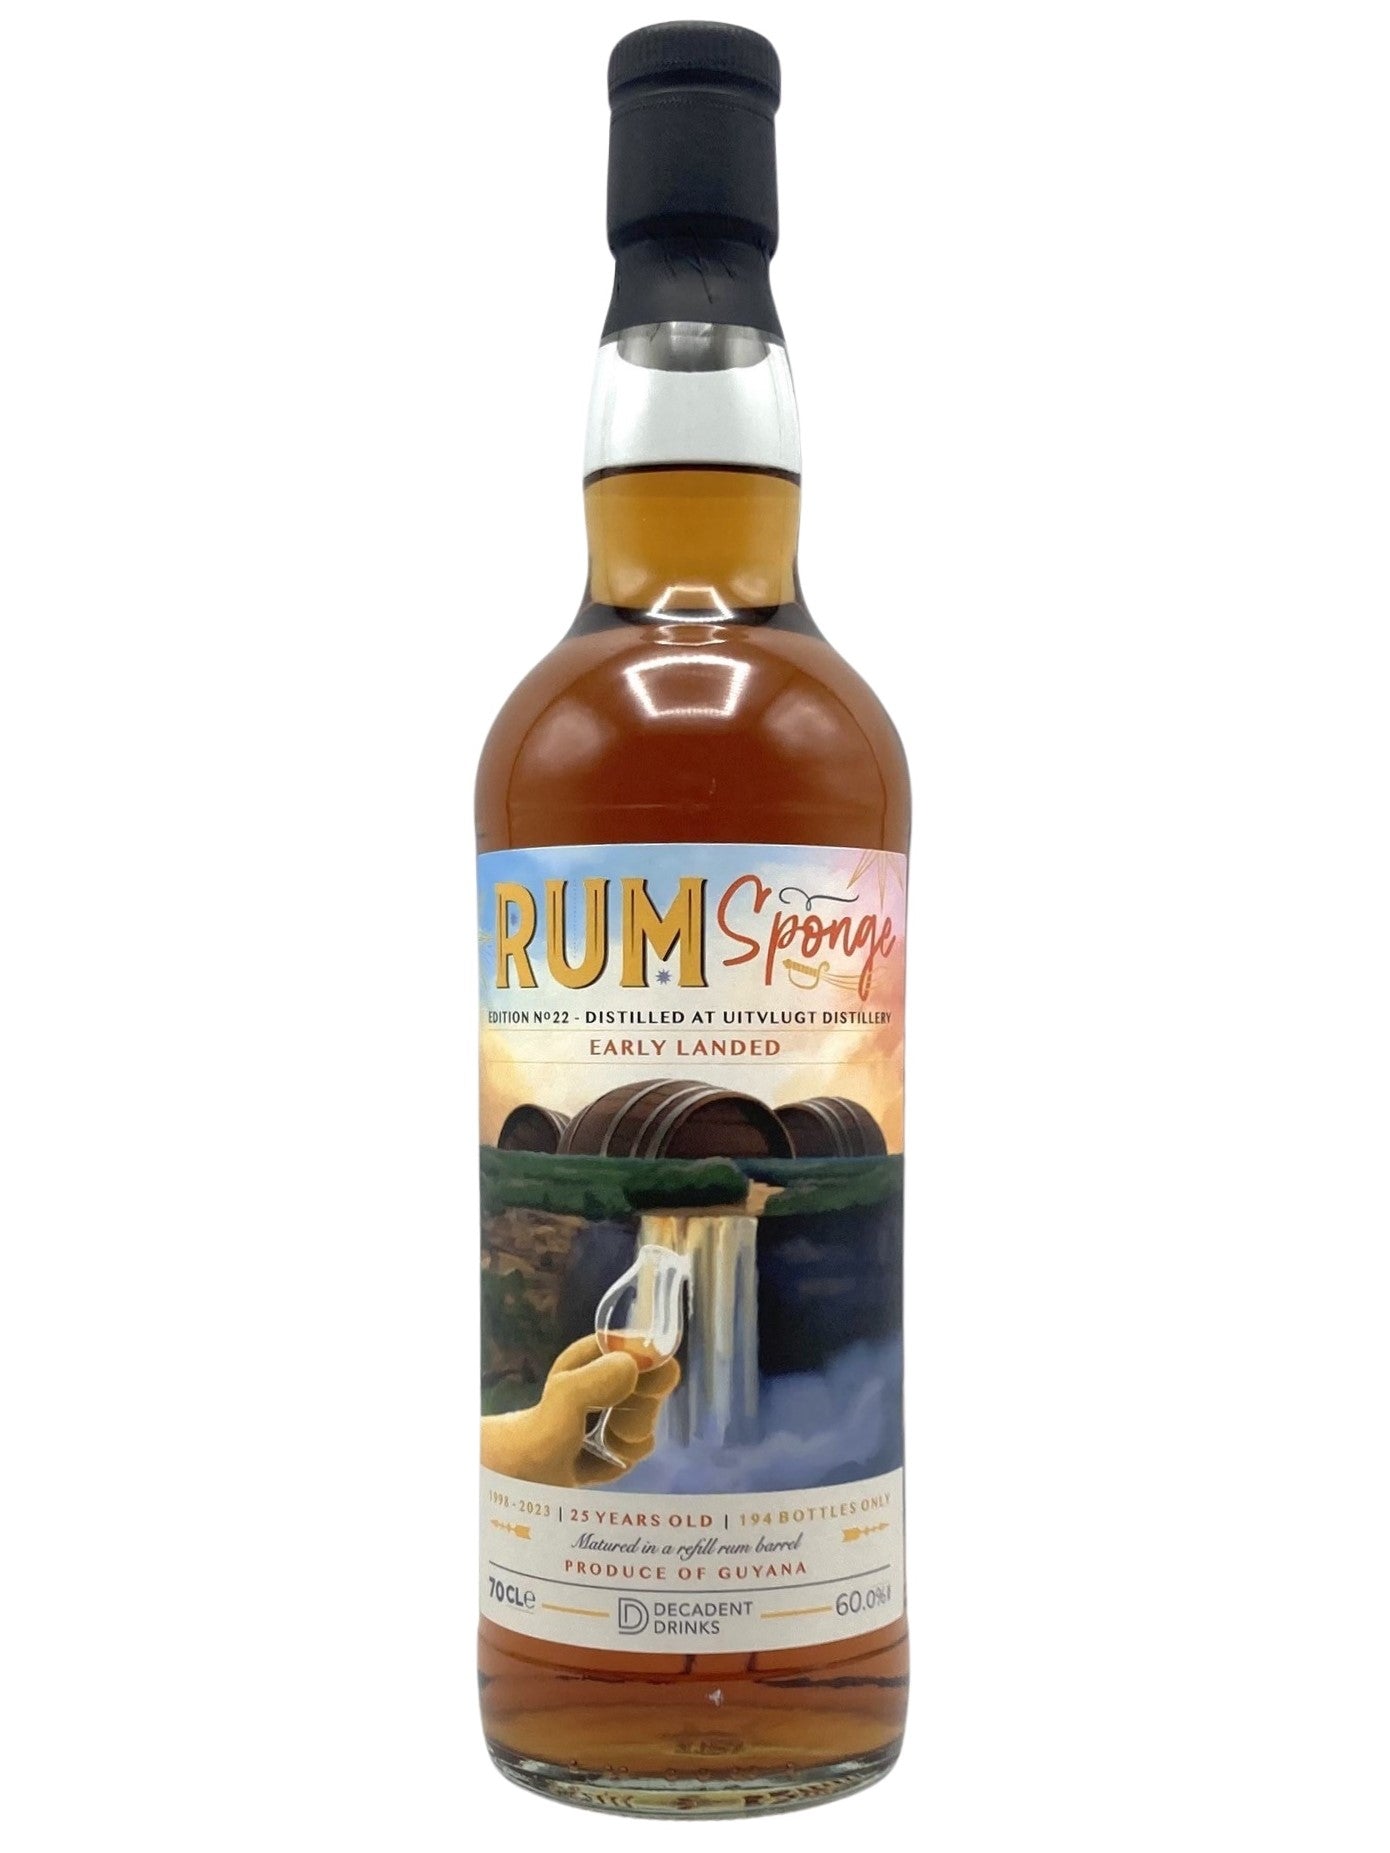 Whisky Sponge Uitvlught Rum 25 Year